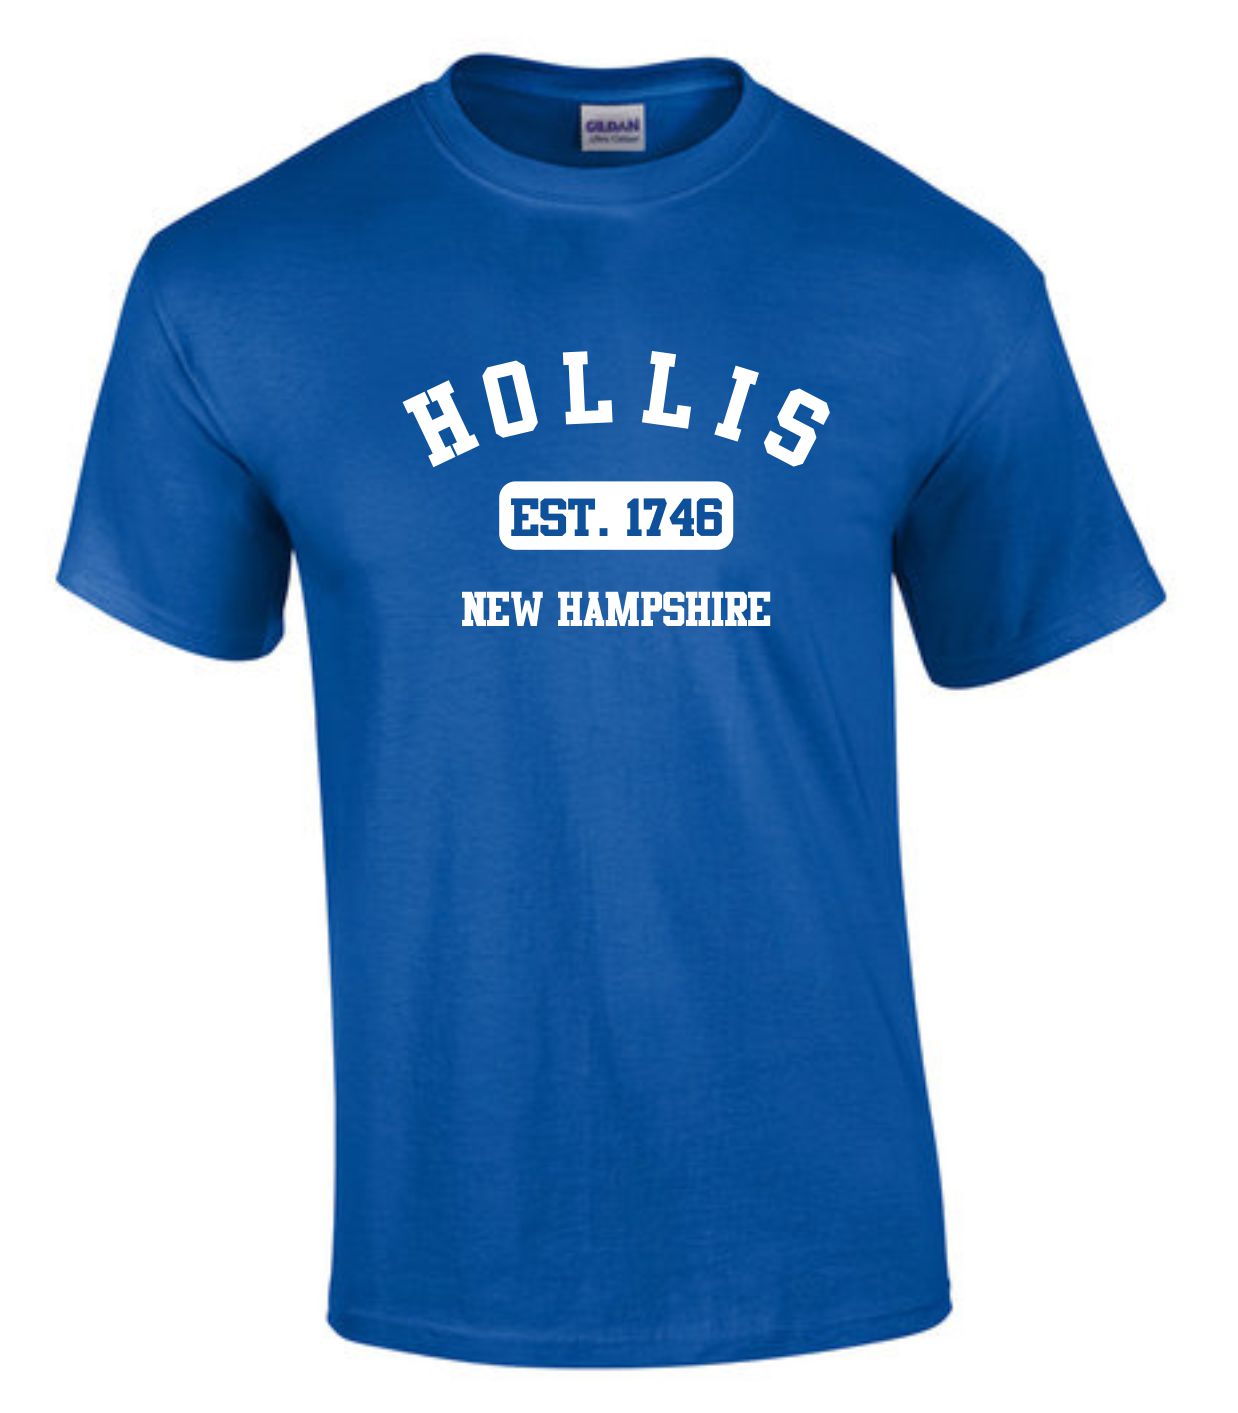 Hollis Est. T-Shirt